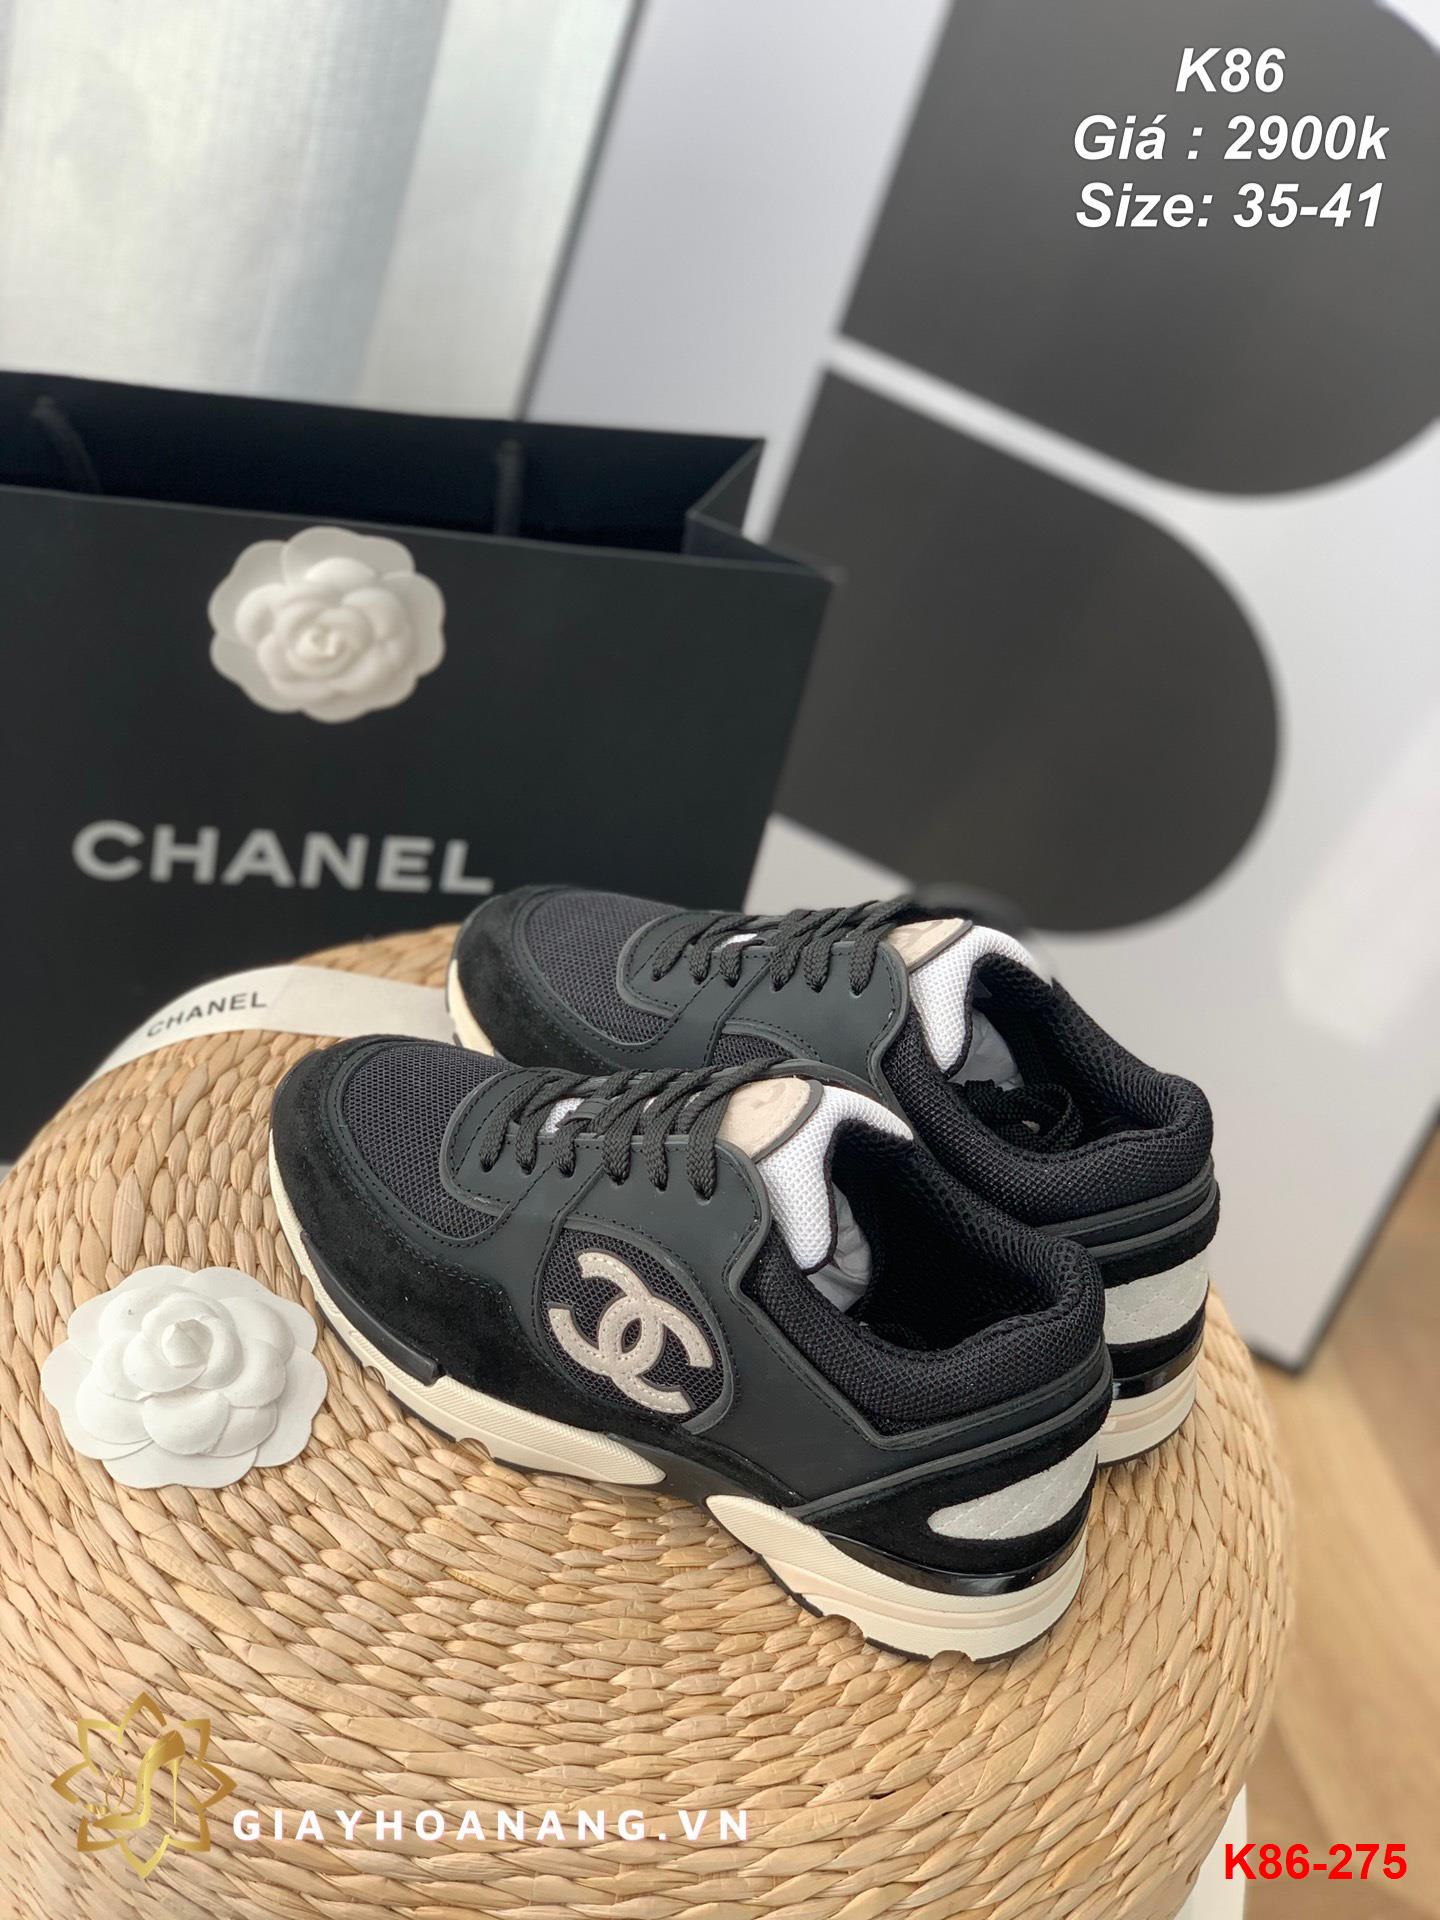 K86-275 Chanel giày thể thao siêu cấp